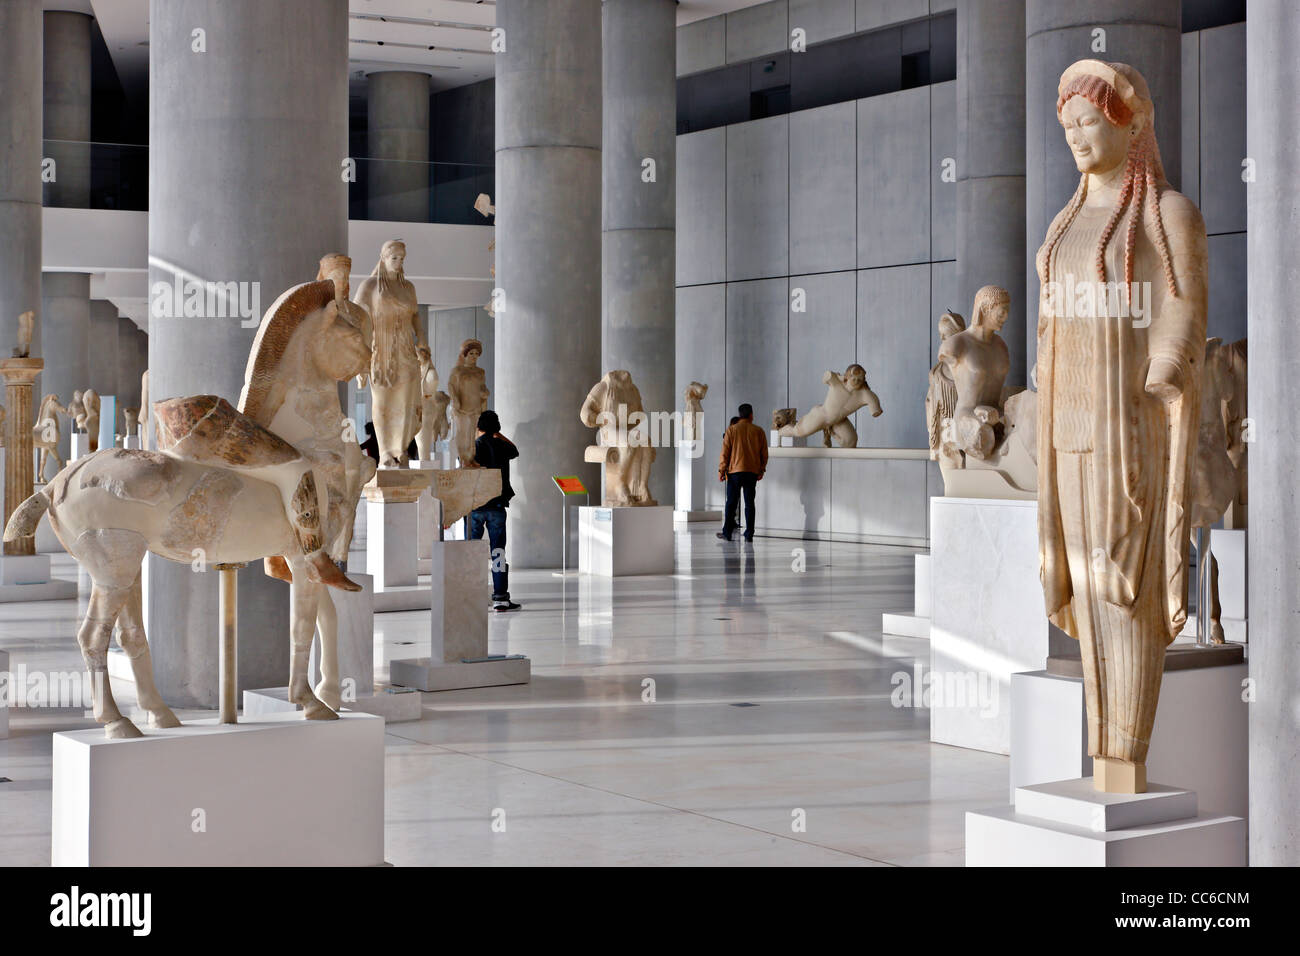 Innenansicht des Akropolis-Museums (neu). Hier sehen Sie die archaische Galerie im 1. Stock (Ebene 1). Athen, Griechenland Stockfoto